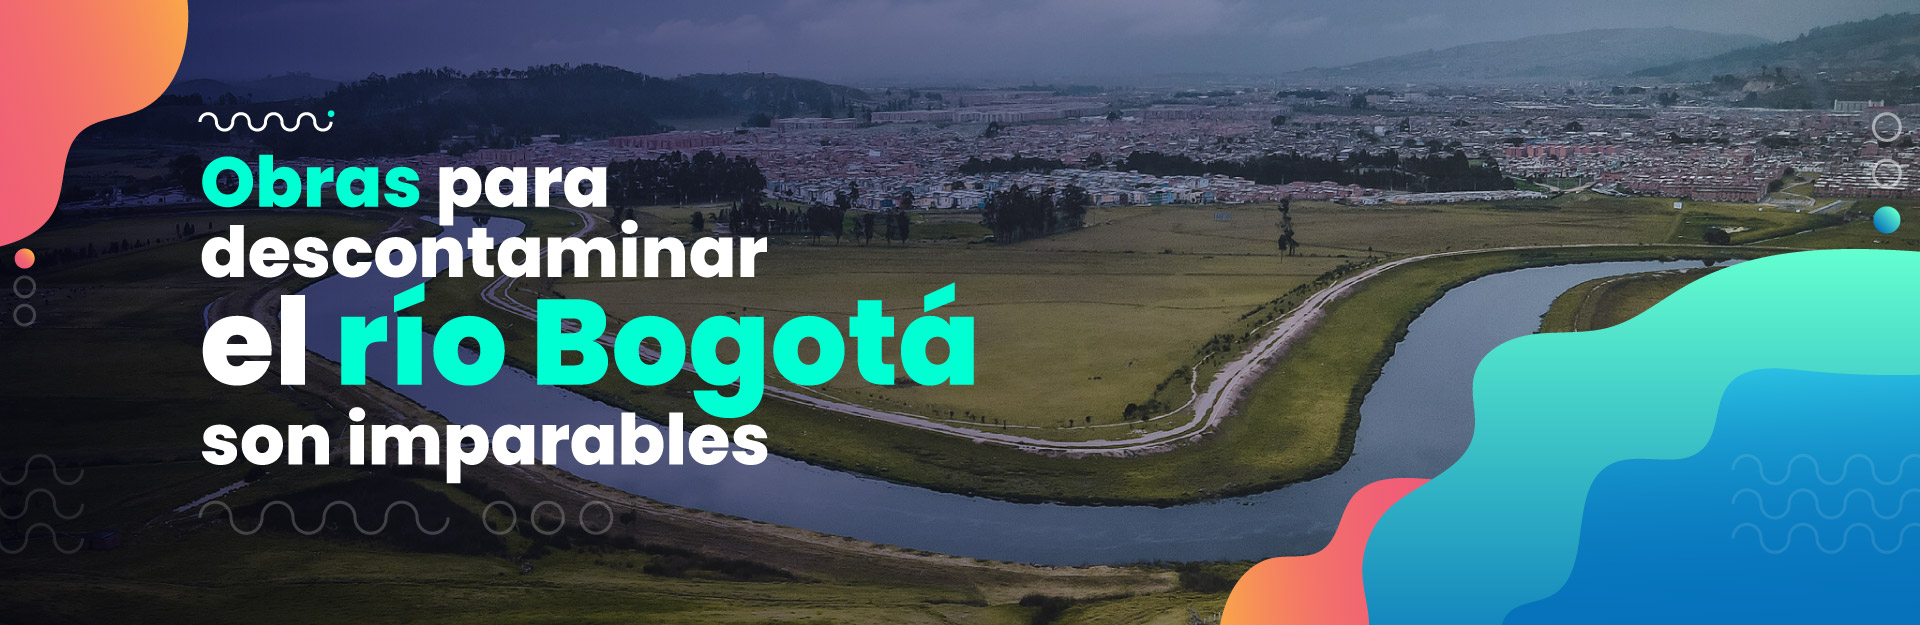 Aprobada modificación de la licencia ambiental del proyecto“Descontaminación del río Bogotá”,  incluyendo la construcción de Ptar Canoas